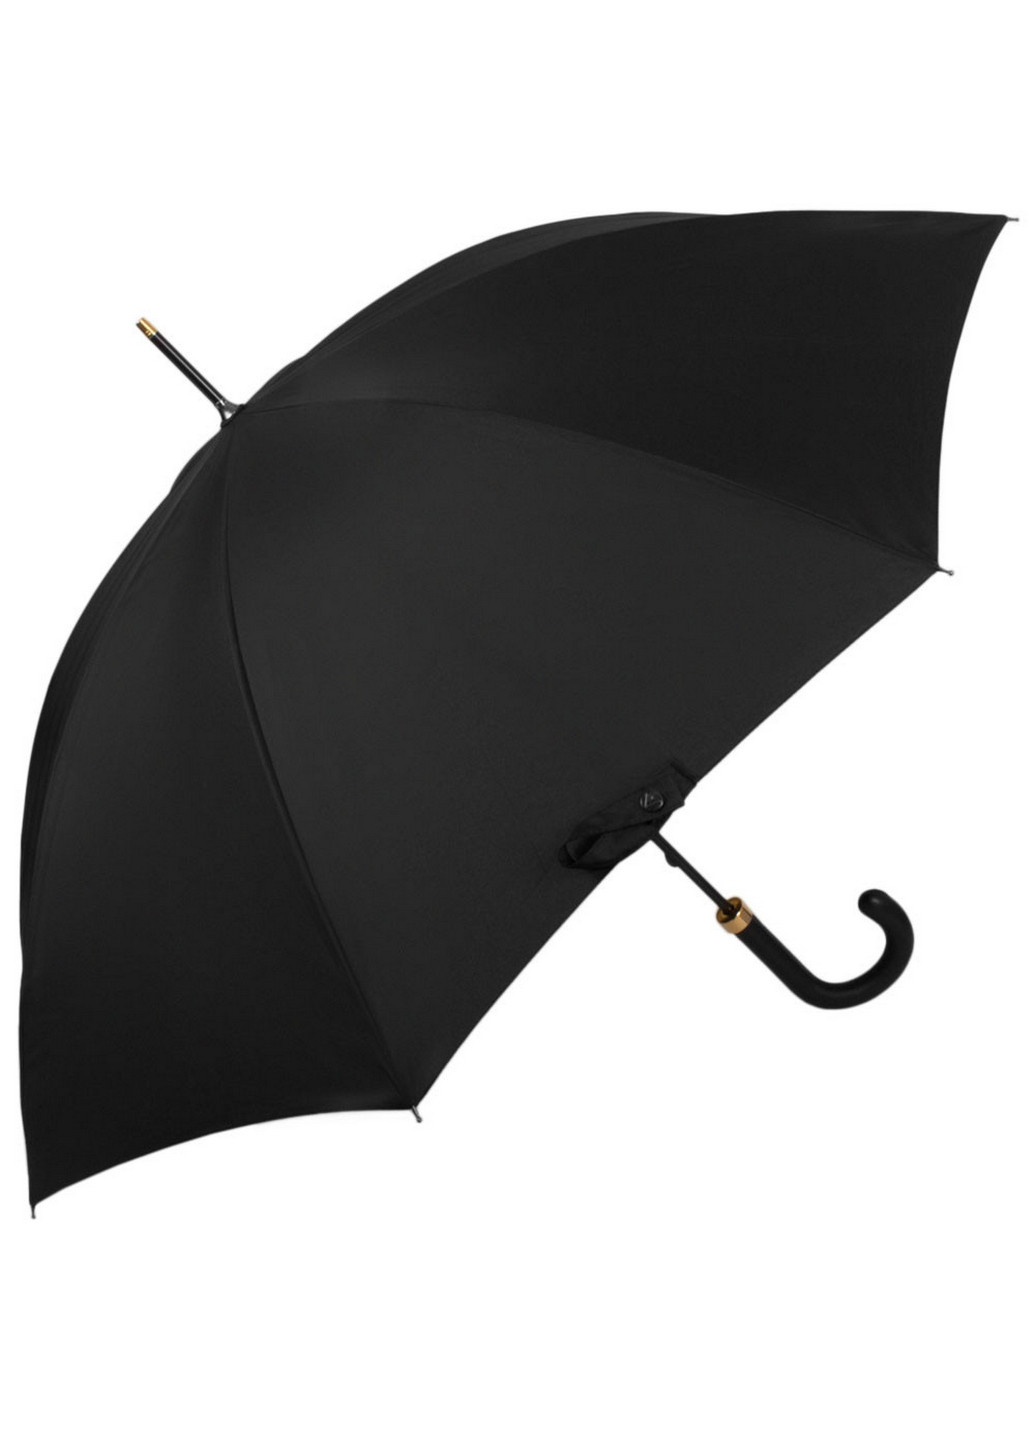 Мужской зонт-трость механический 103 см Fulton (260330101)